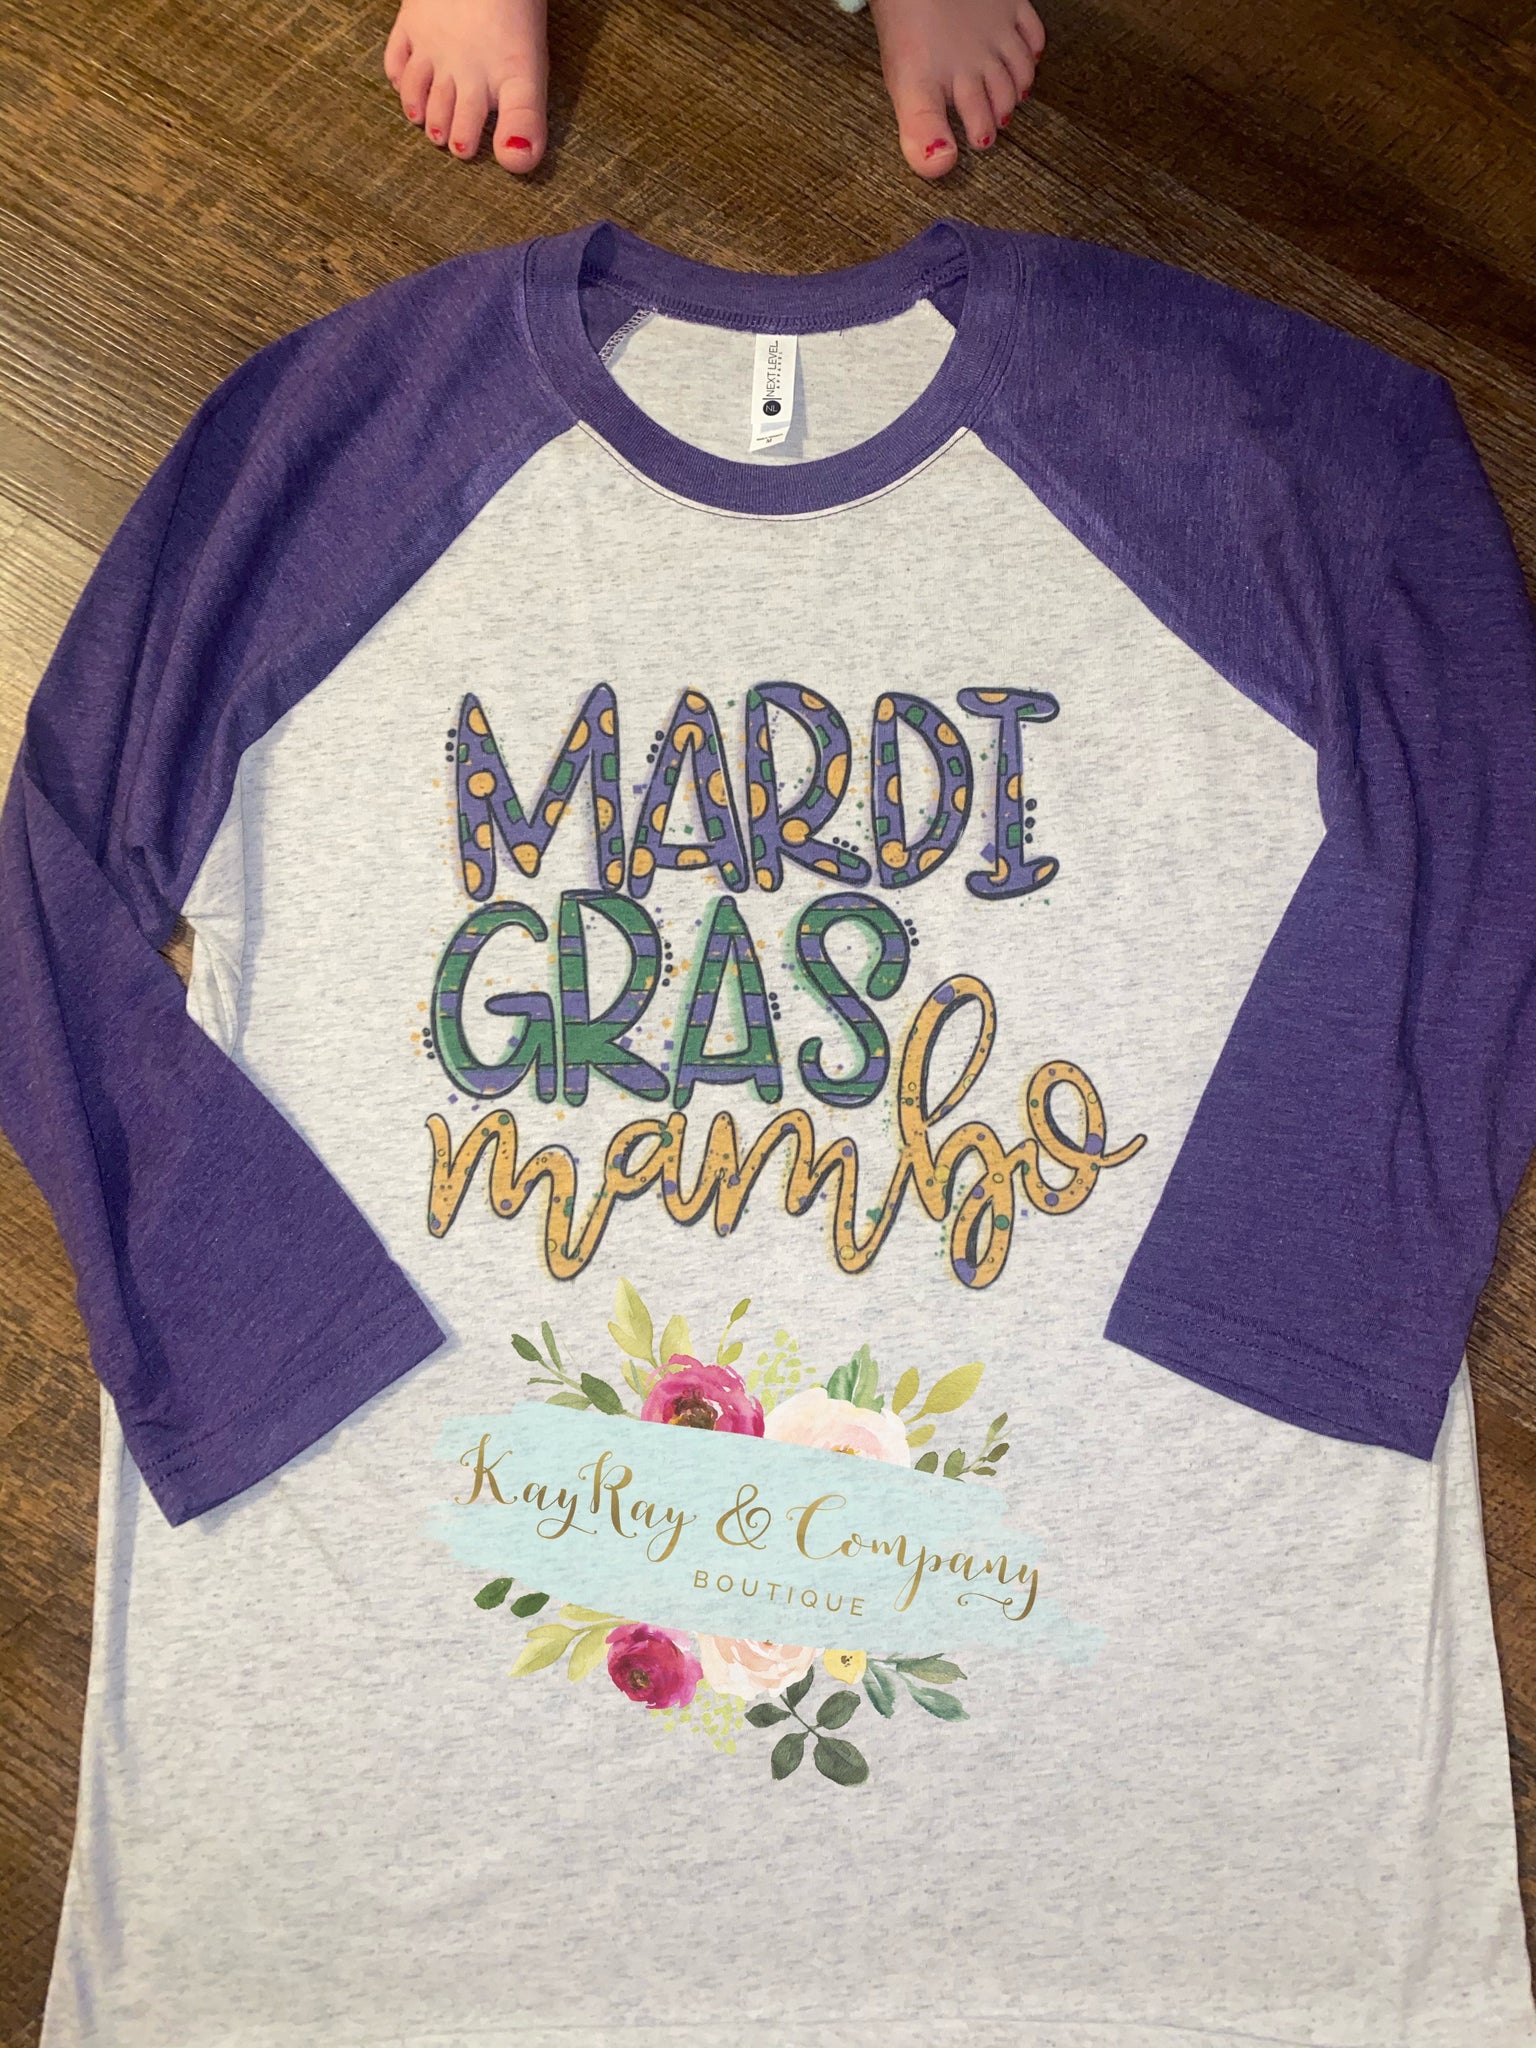 Mardi Gras Mambo Raglan T-shirt